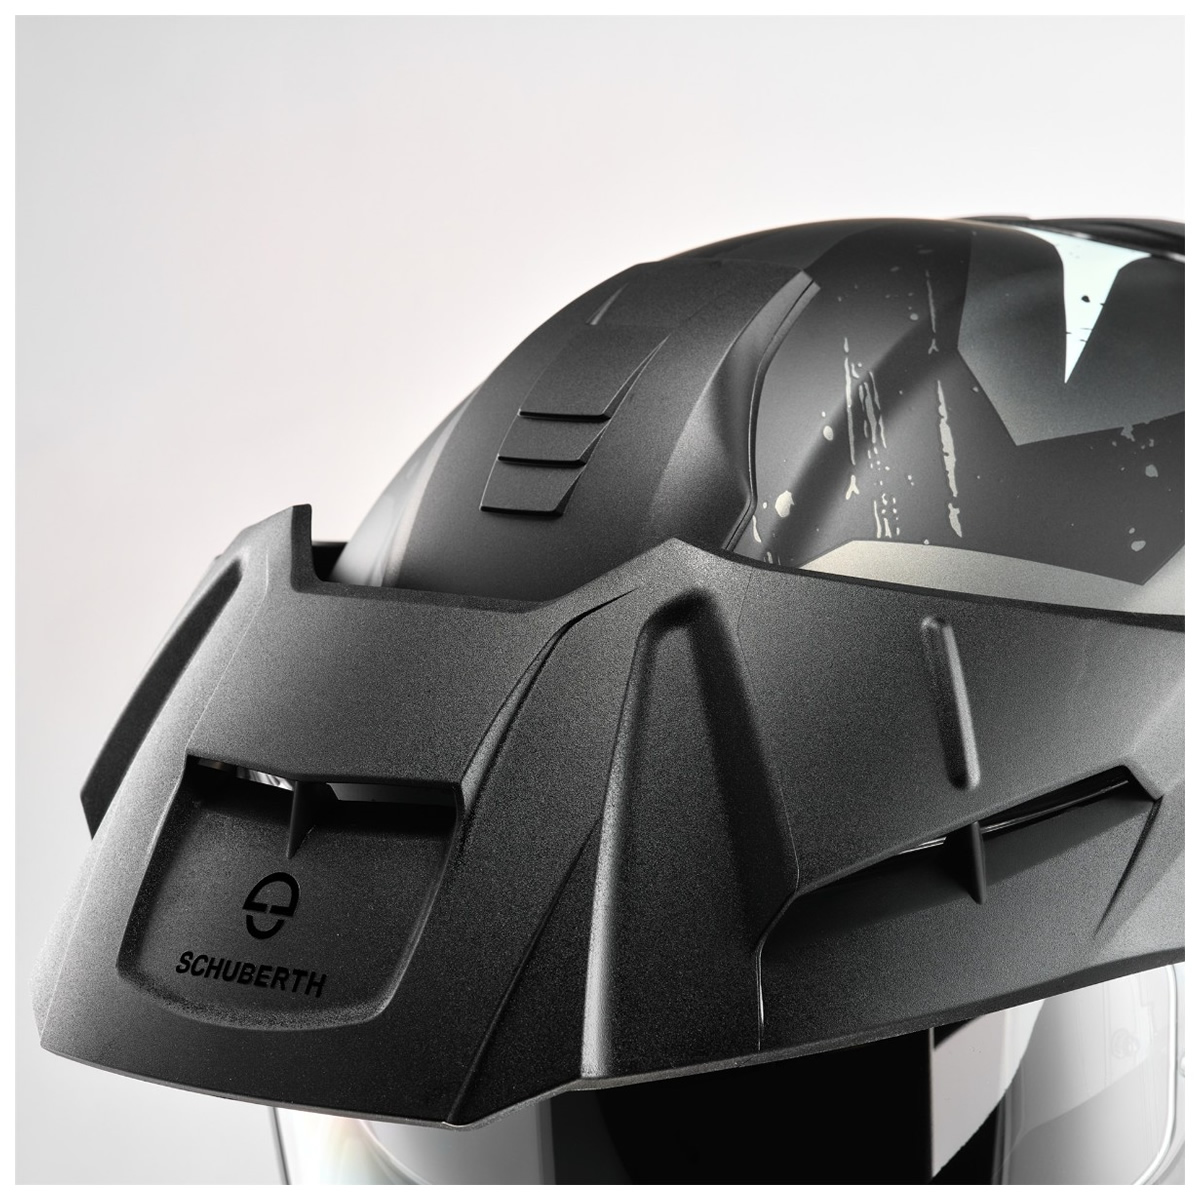 Schuberth Klapphelm Helm E2 Explorer, schwarz-grau-weiß-matt